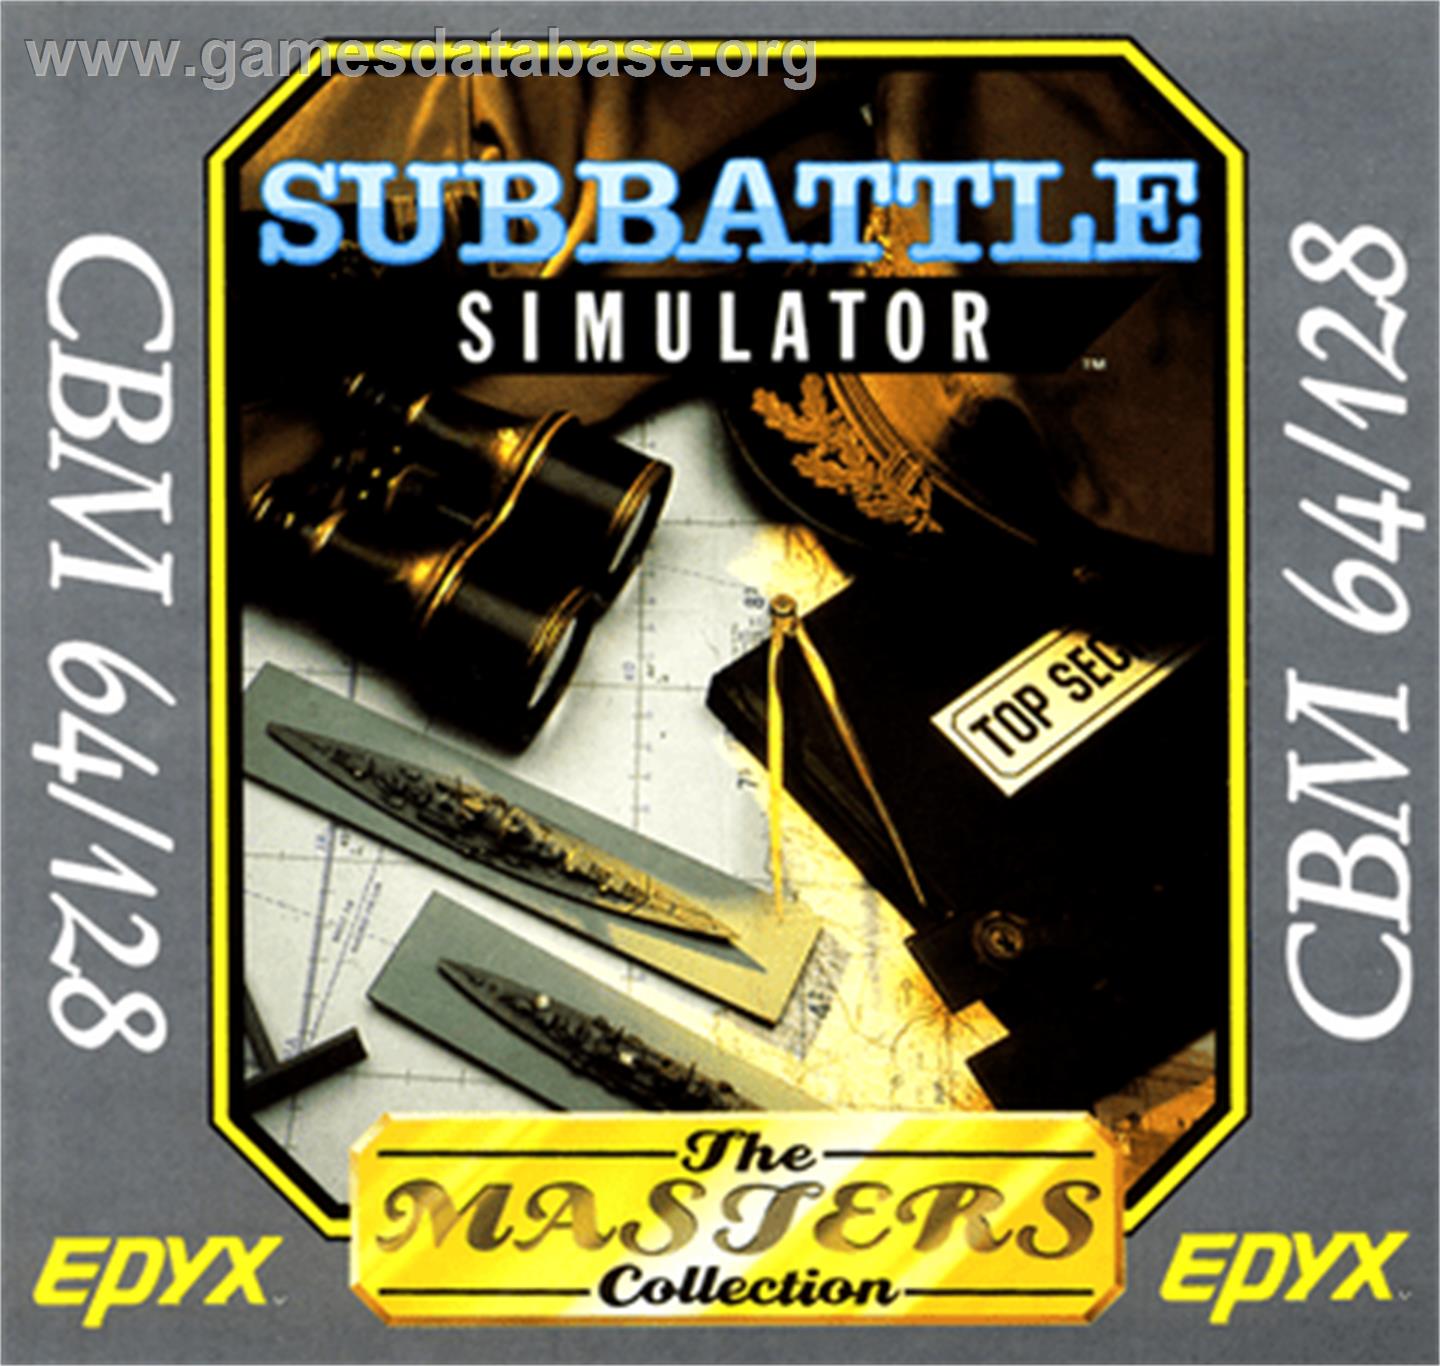 Sub Battle Simulator - Commodore 64 - Artwork - Box